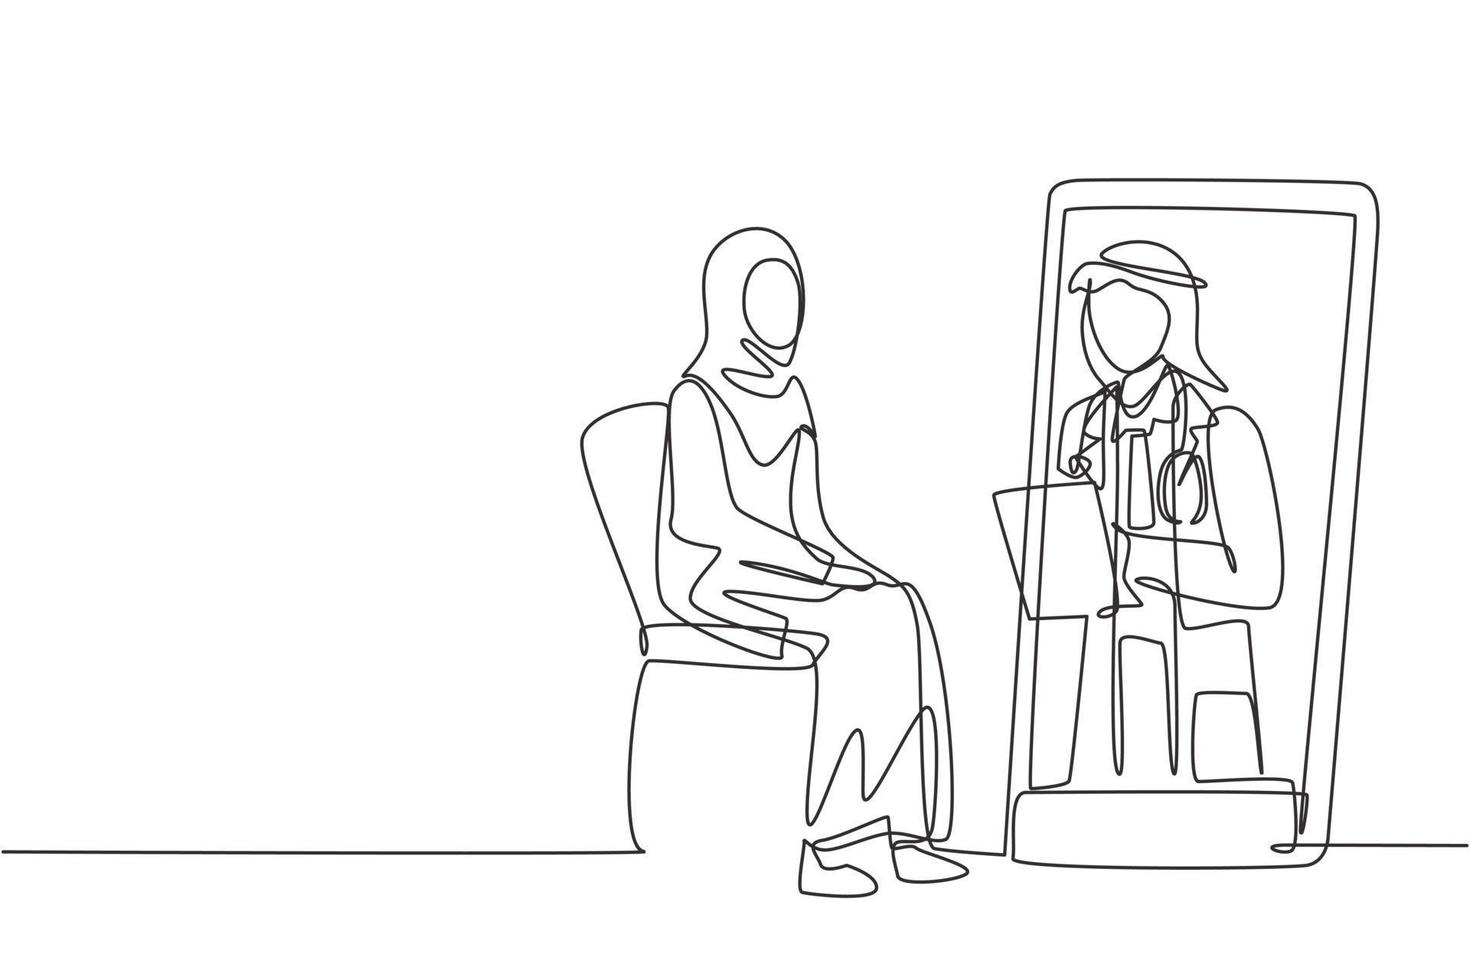 un seul dessin au trait médecin de sexe masculin arabe tenant un presse-papiers vérifiant l'état d'une patiente assise sur une chaise. consultation en ligne. ligne continue moderne dessiner illustration vectorielle graphique vecteur